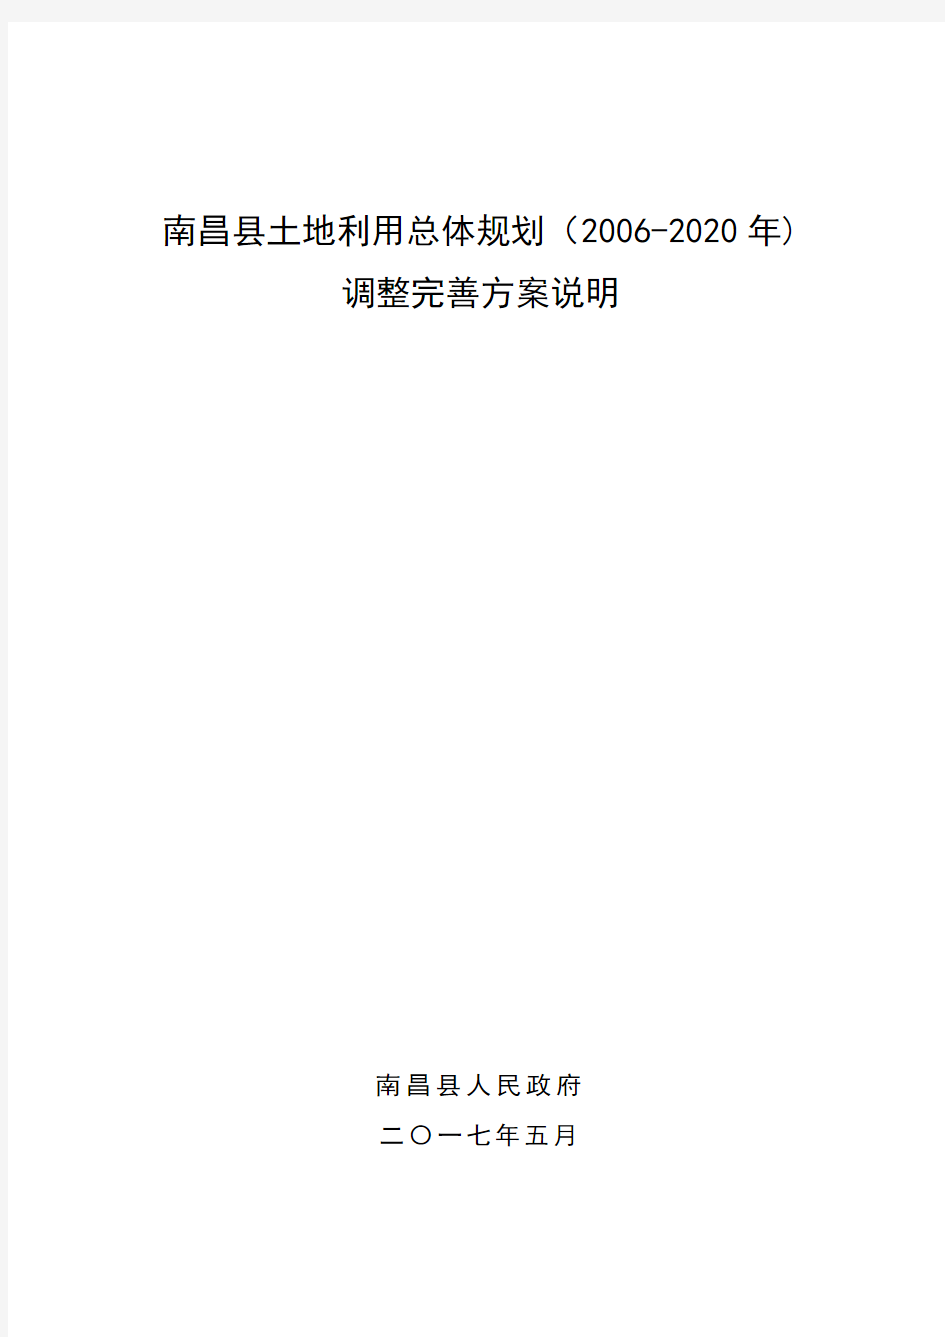 南昌县土地利用总体规划(2006-2020年)